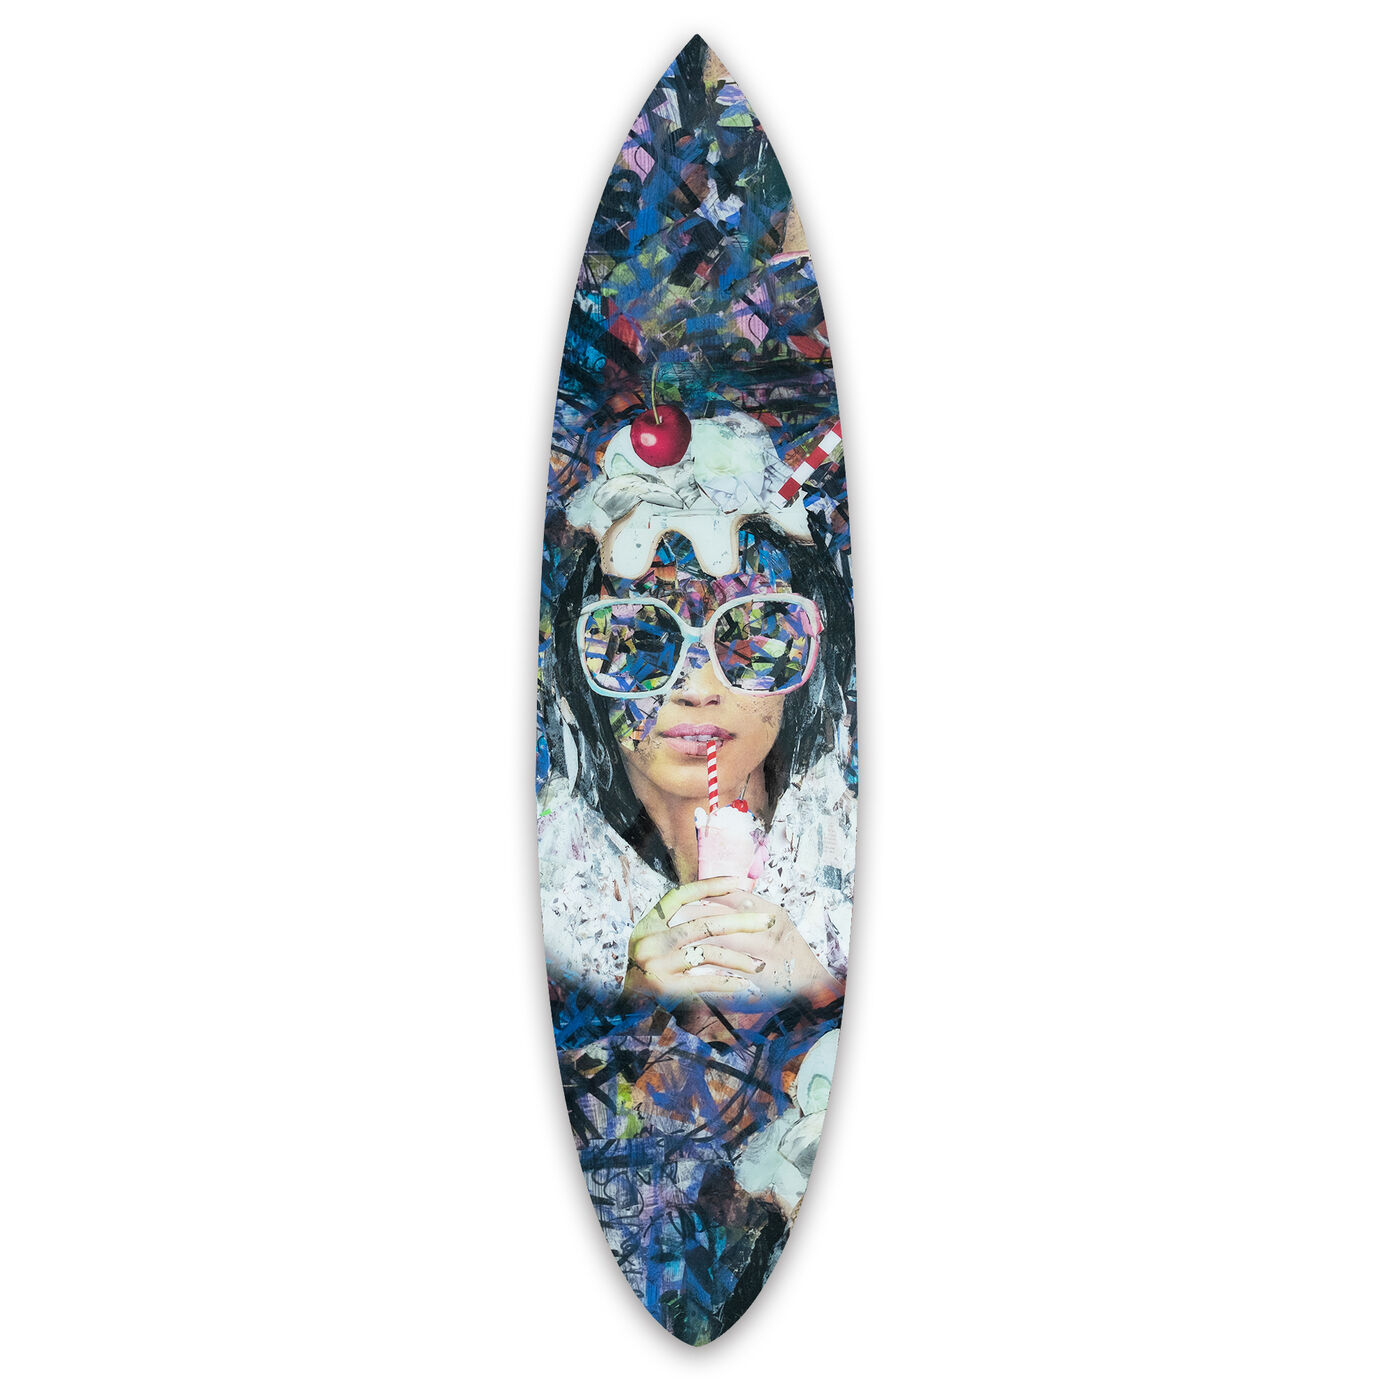 Katy Hirschfeld - Milshake Surfboard